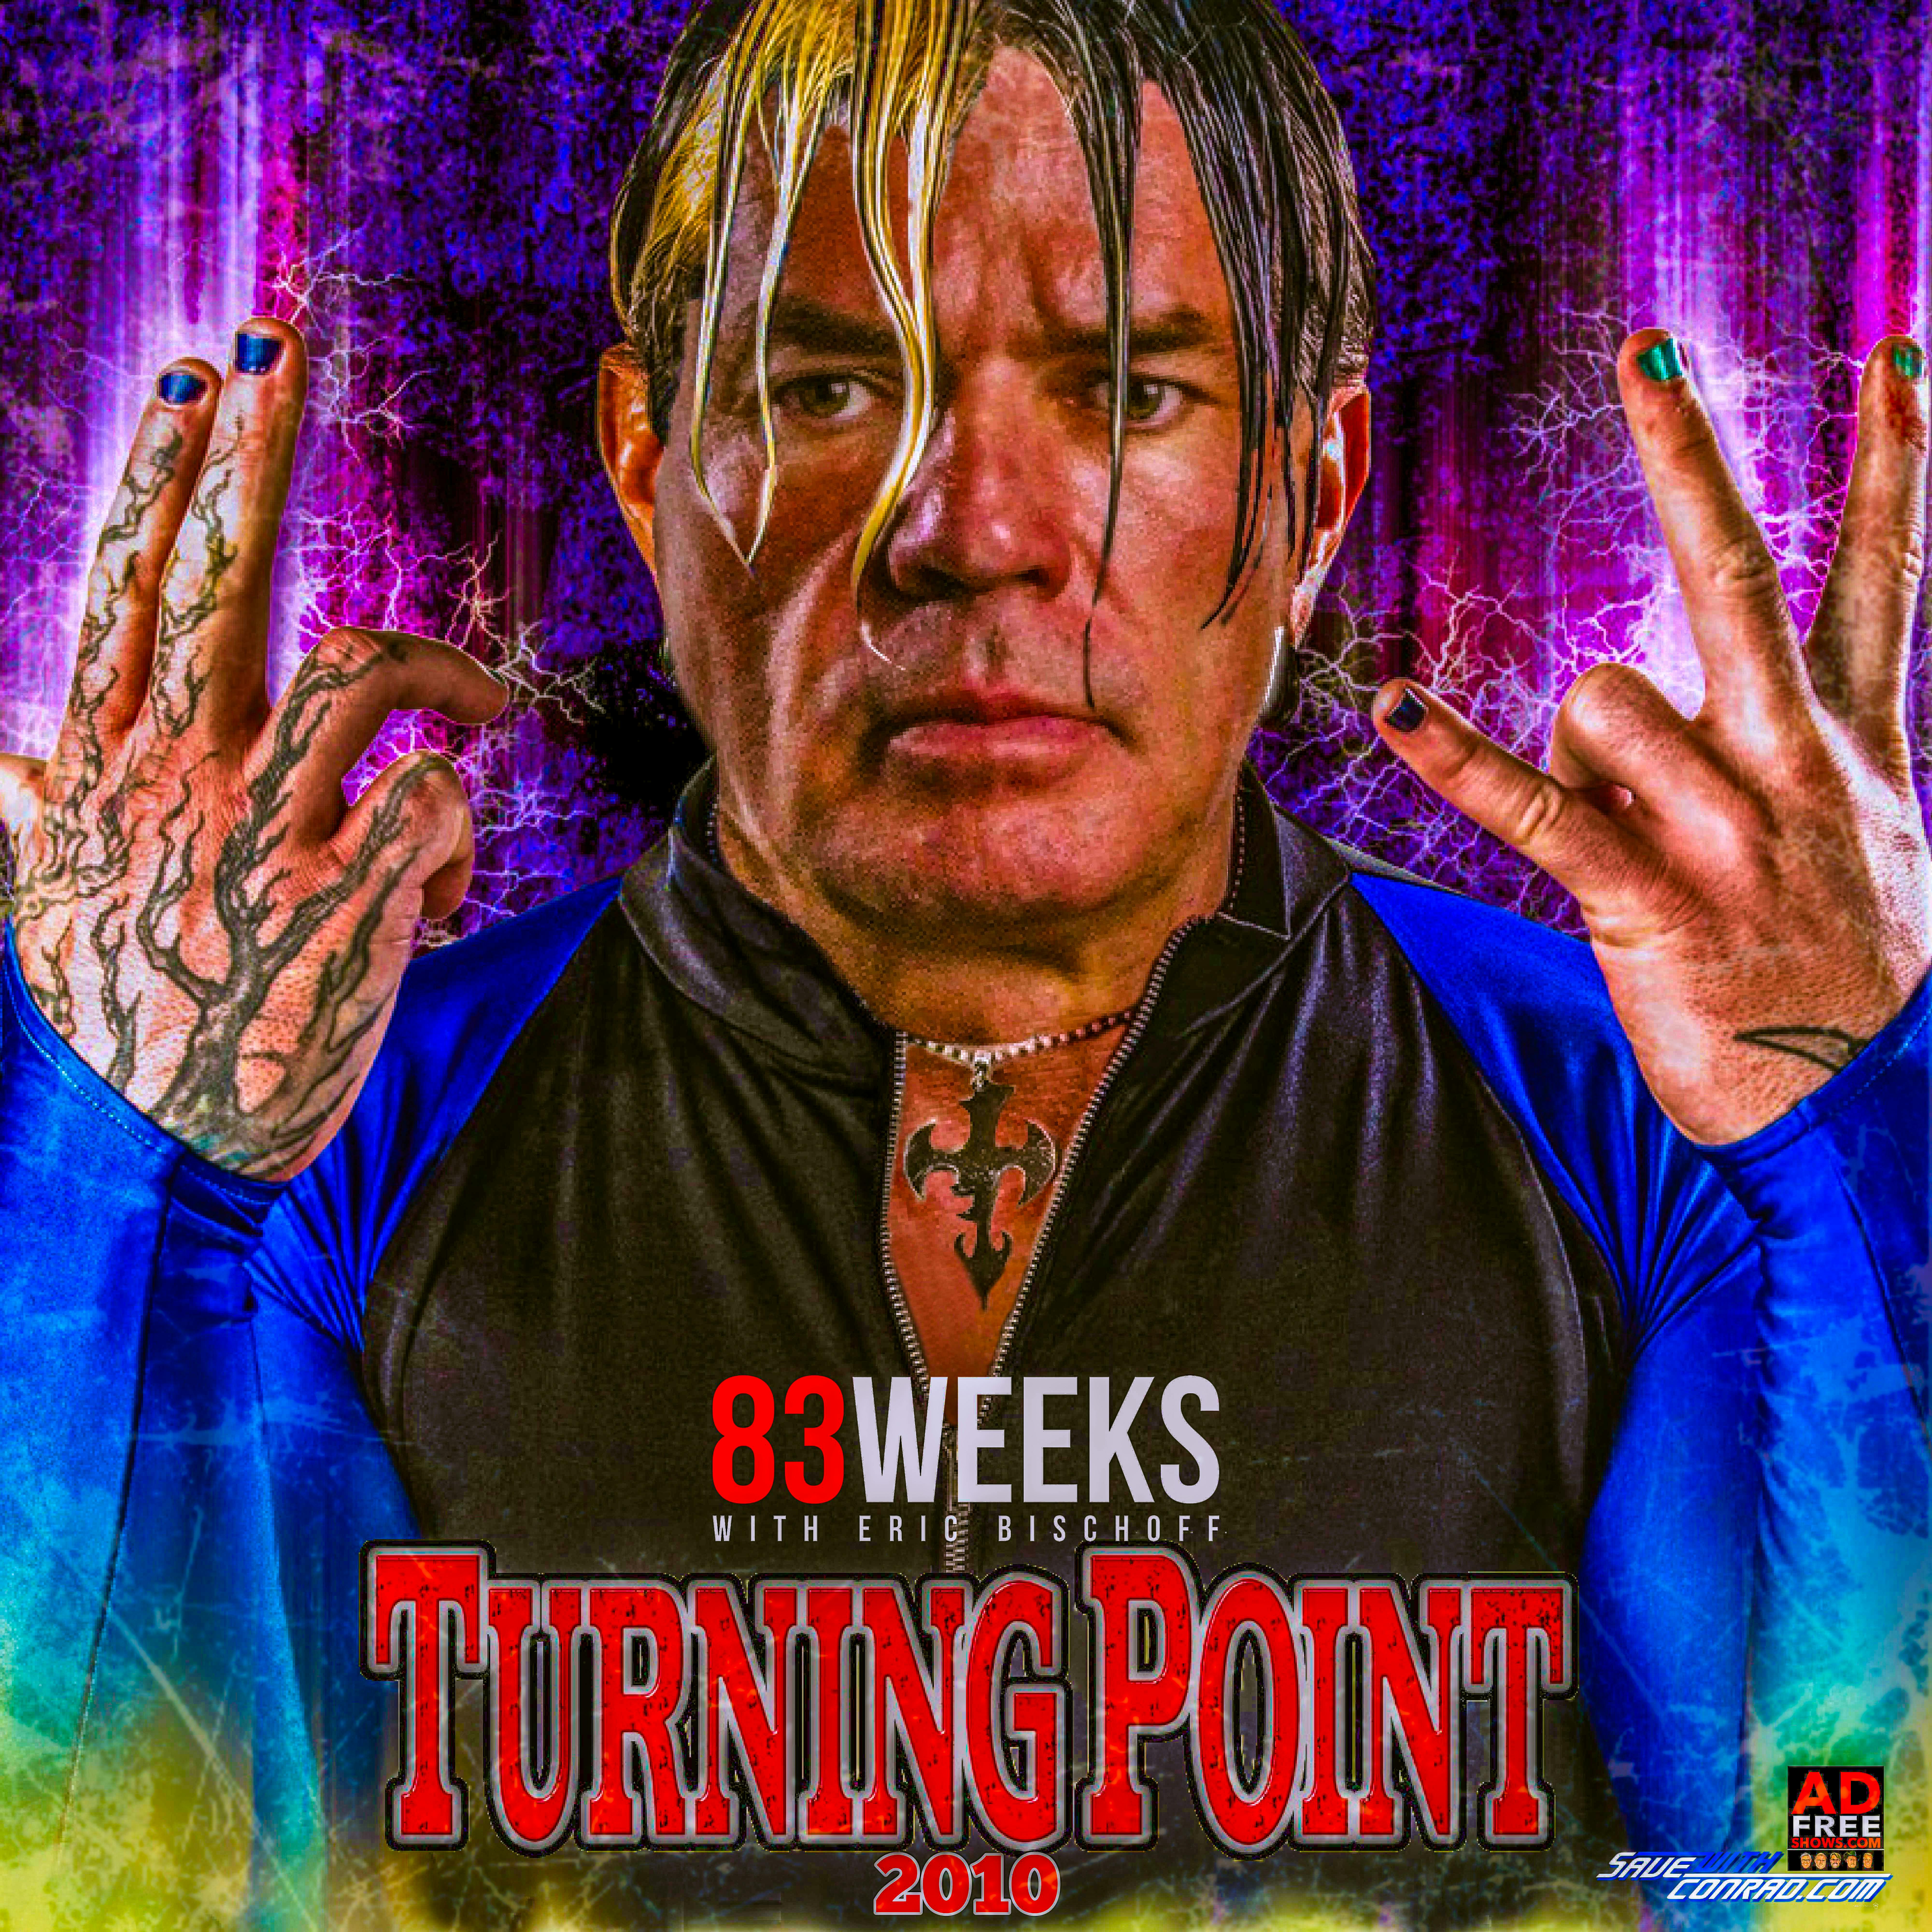 Episode 135: TNA Turning Point 2010